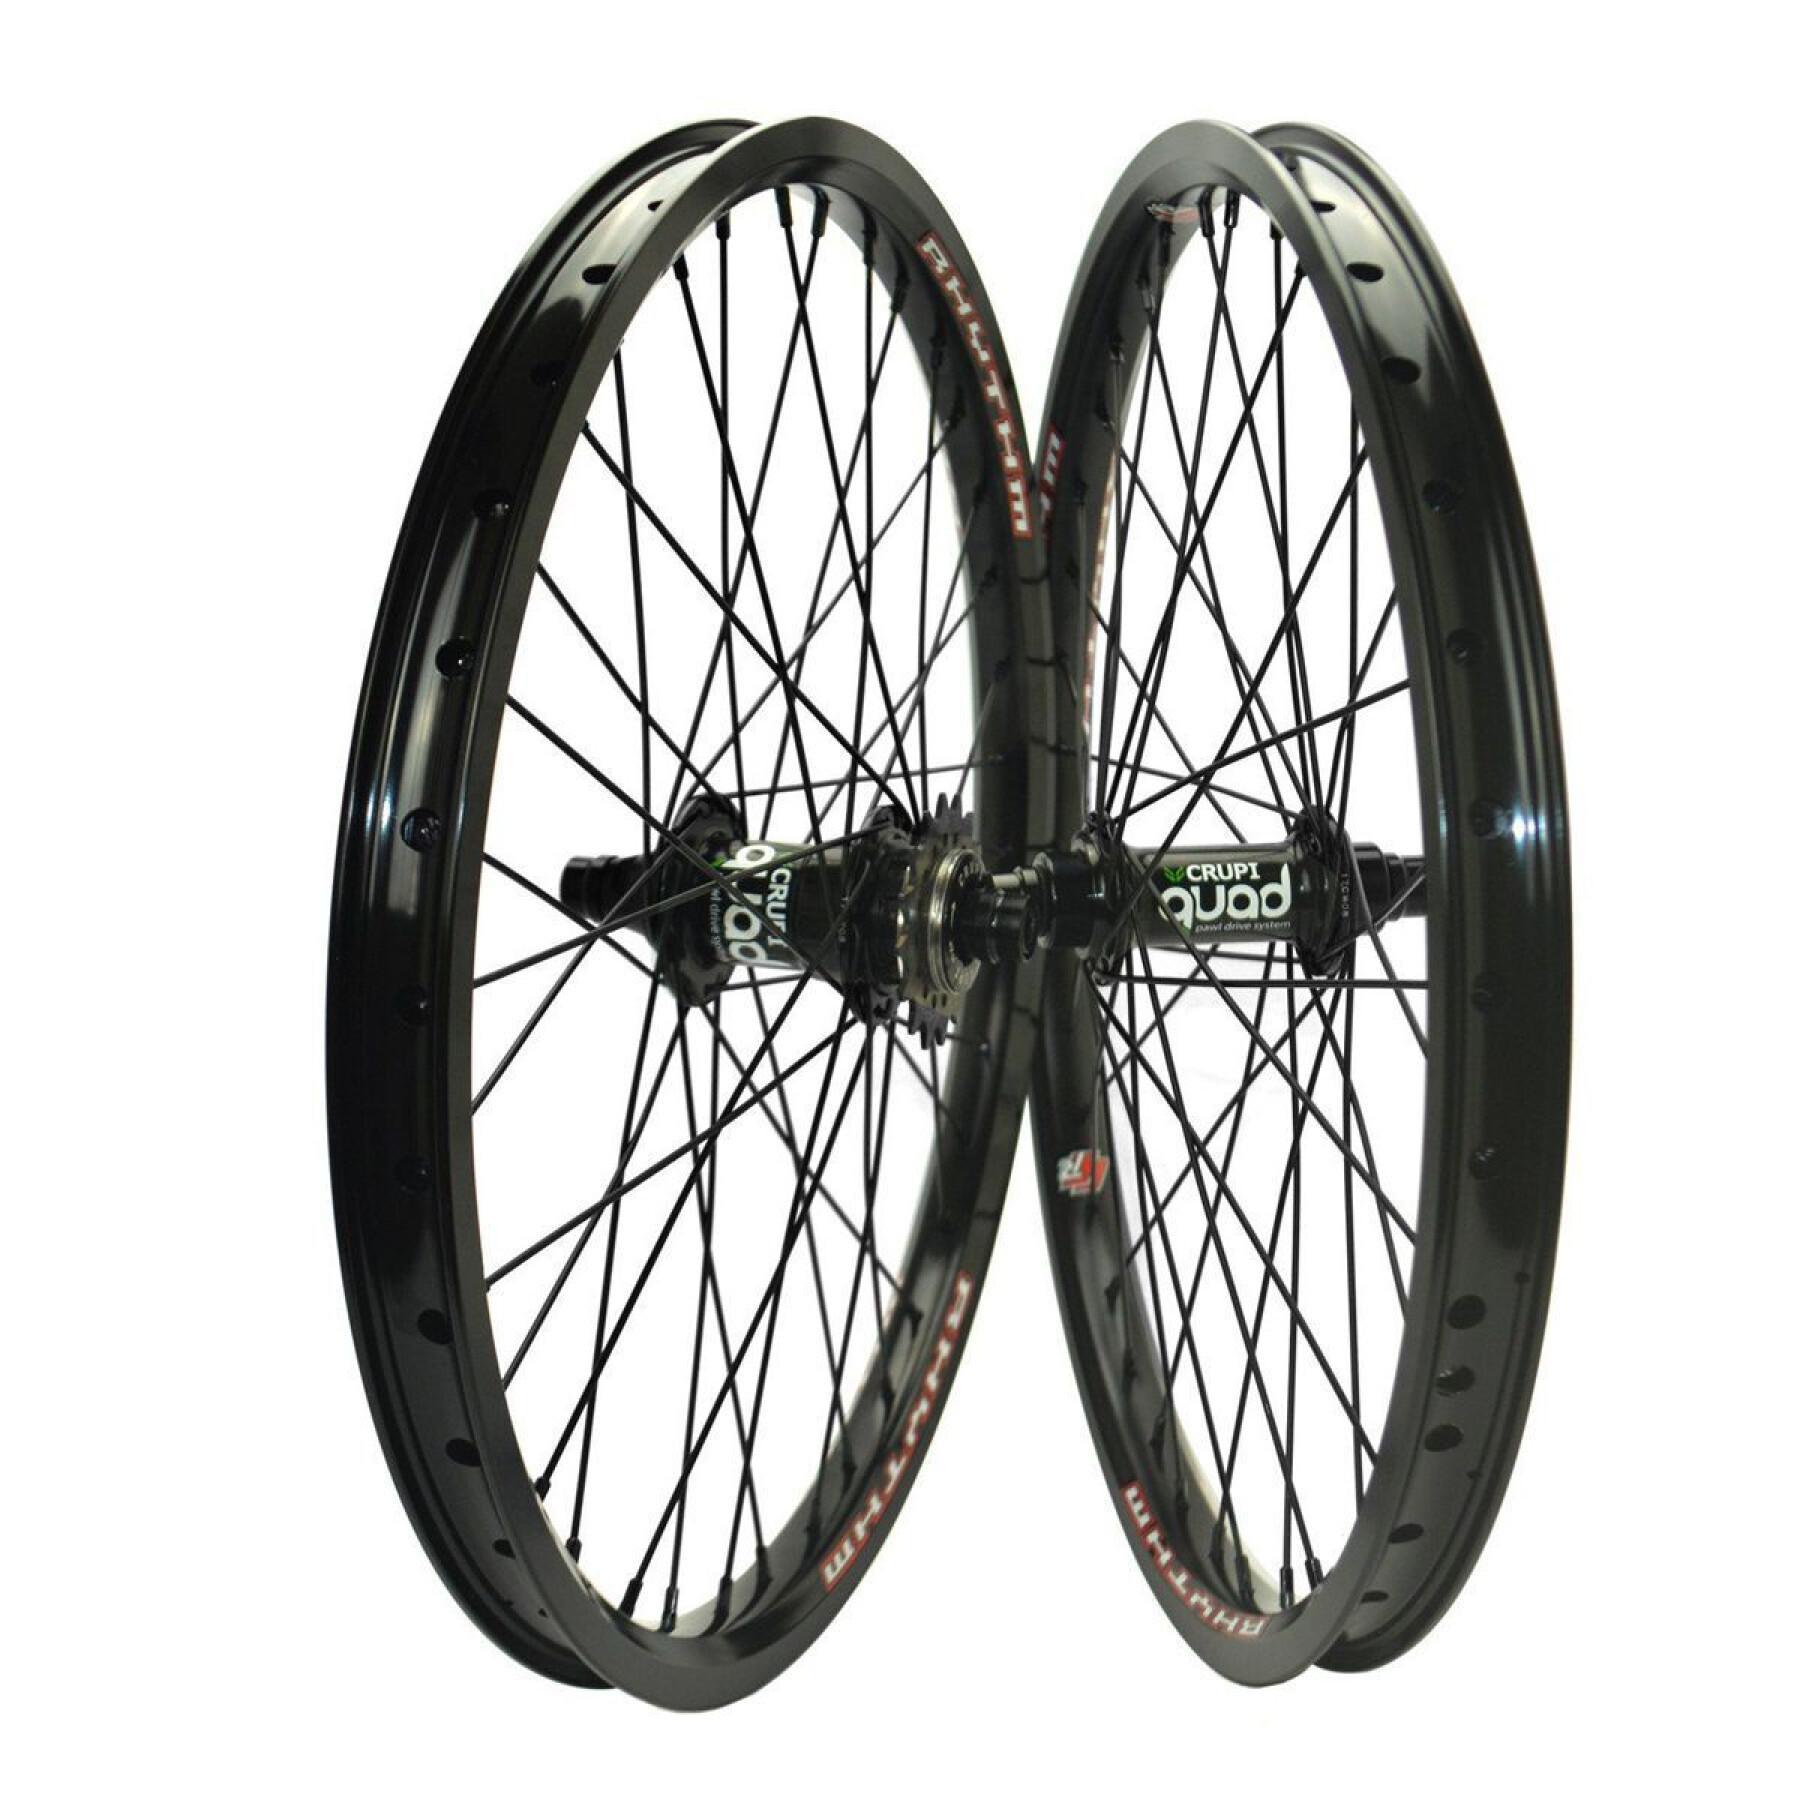 Bike wheel Crupi Quad 20 "x1,50